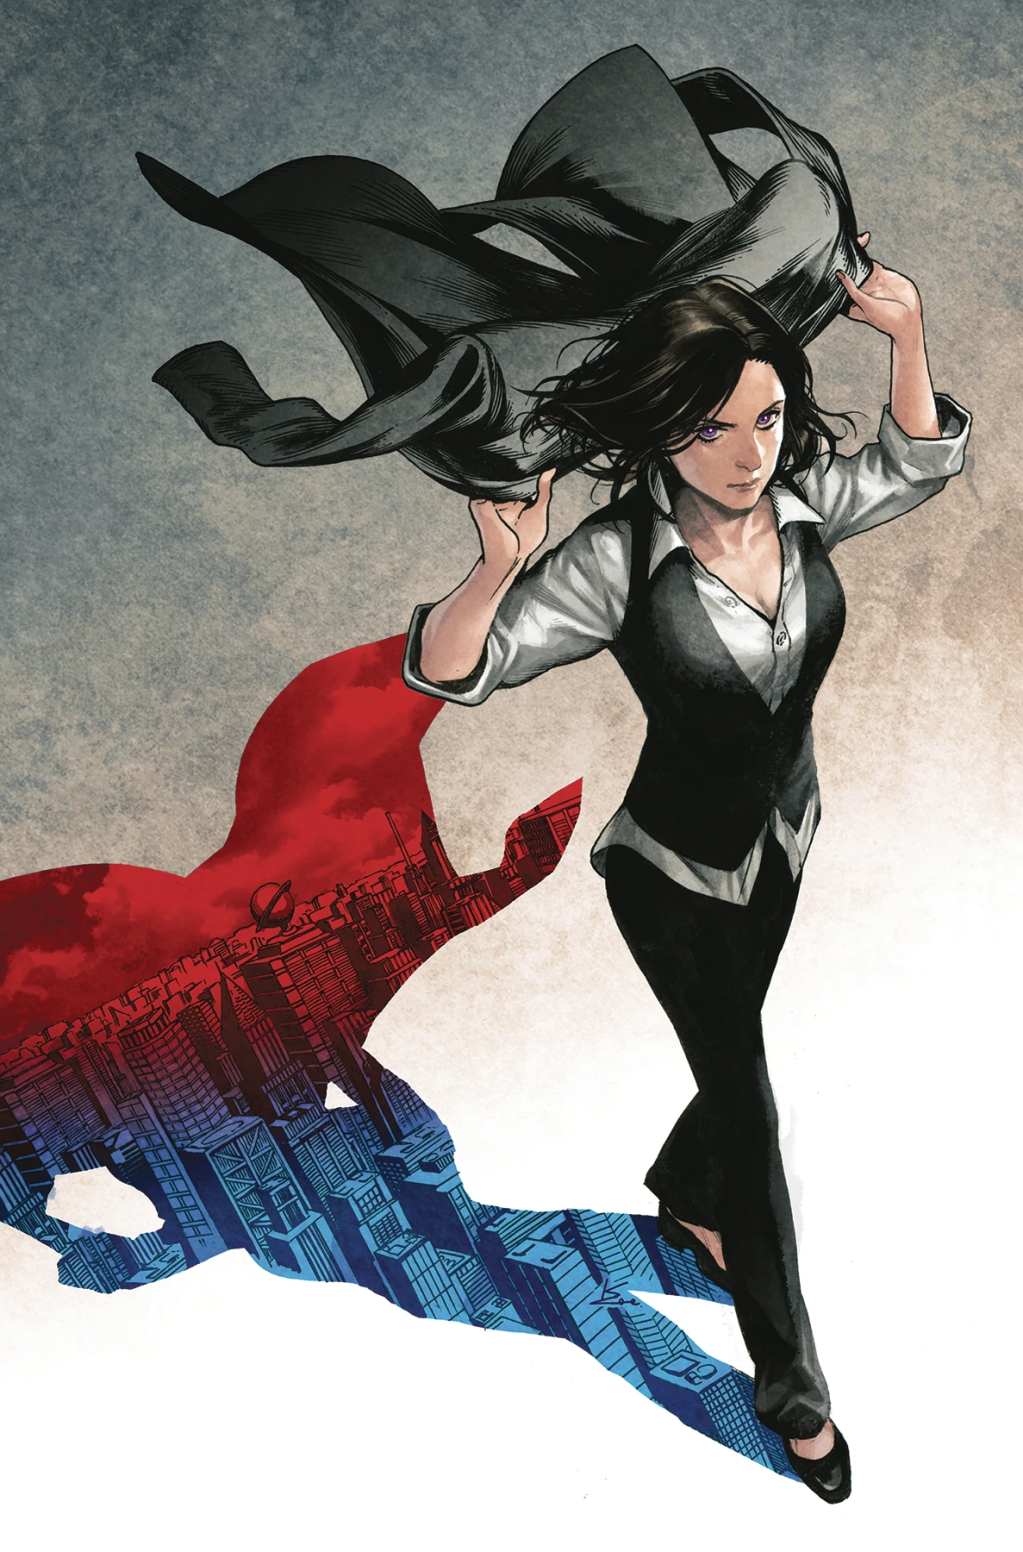 Lois Lane busca seu próximo furo na capa variante de Kamome Shirahama para Lois Lane Vol. 2#8 "Inimigo do Povo, Parte Oito" (2020), DC